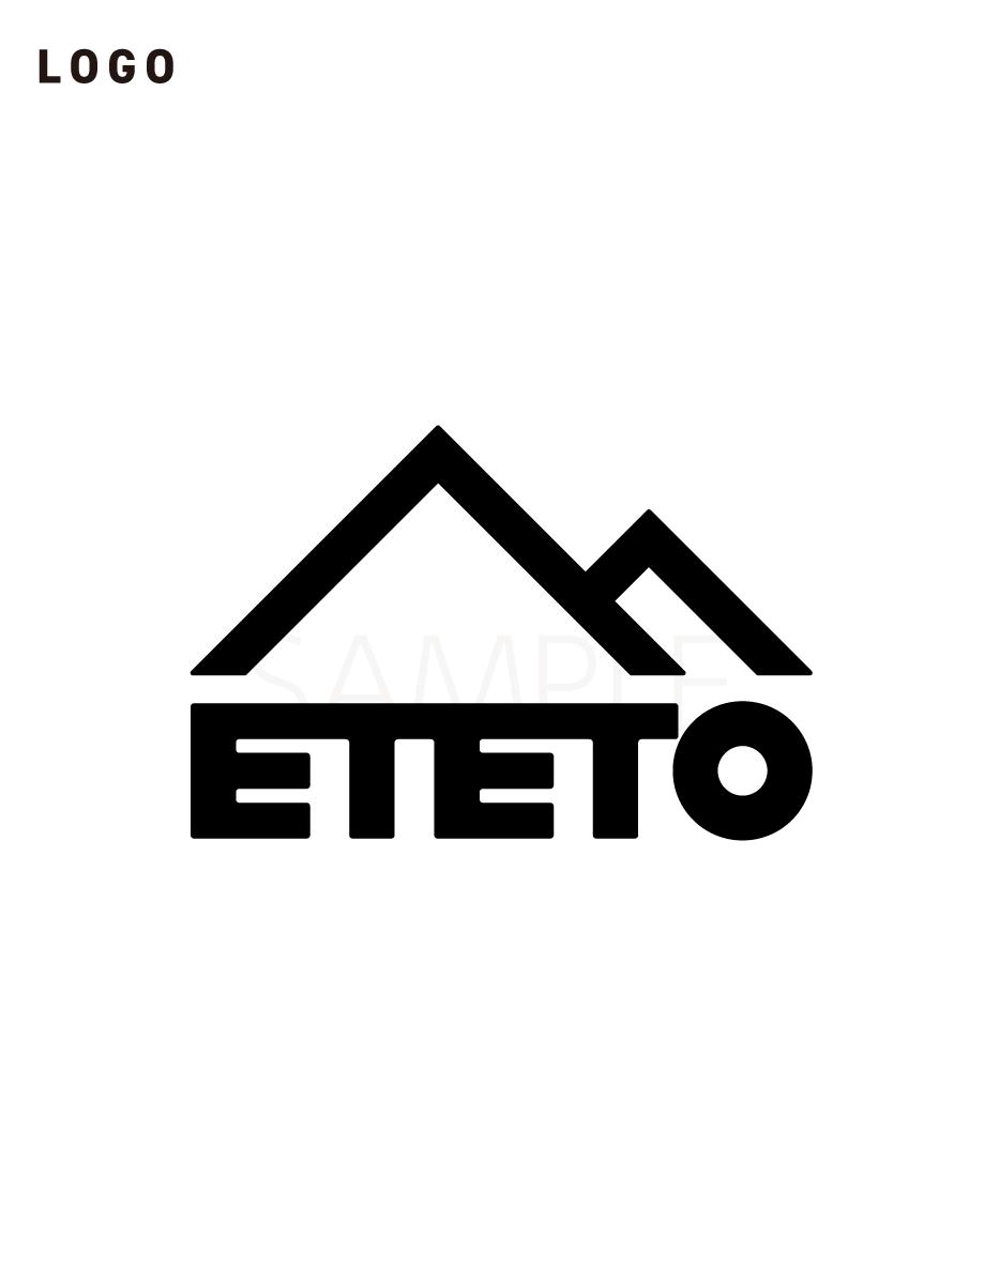 logo_ETETO_01.png